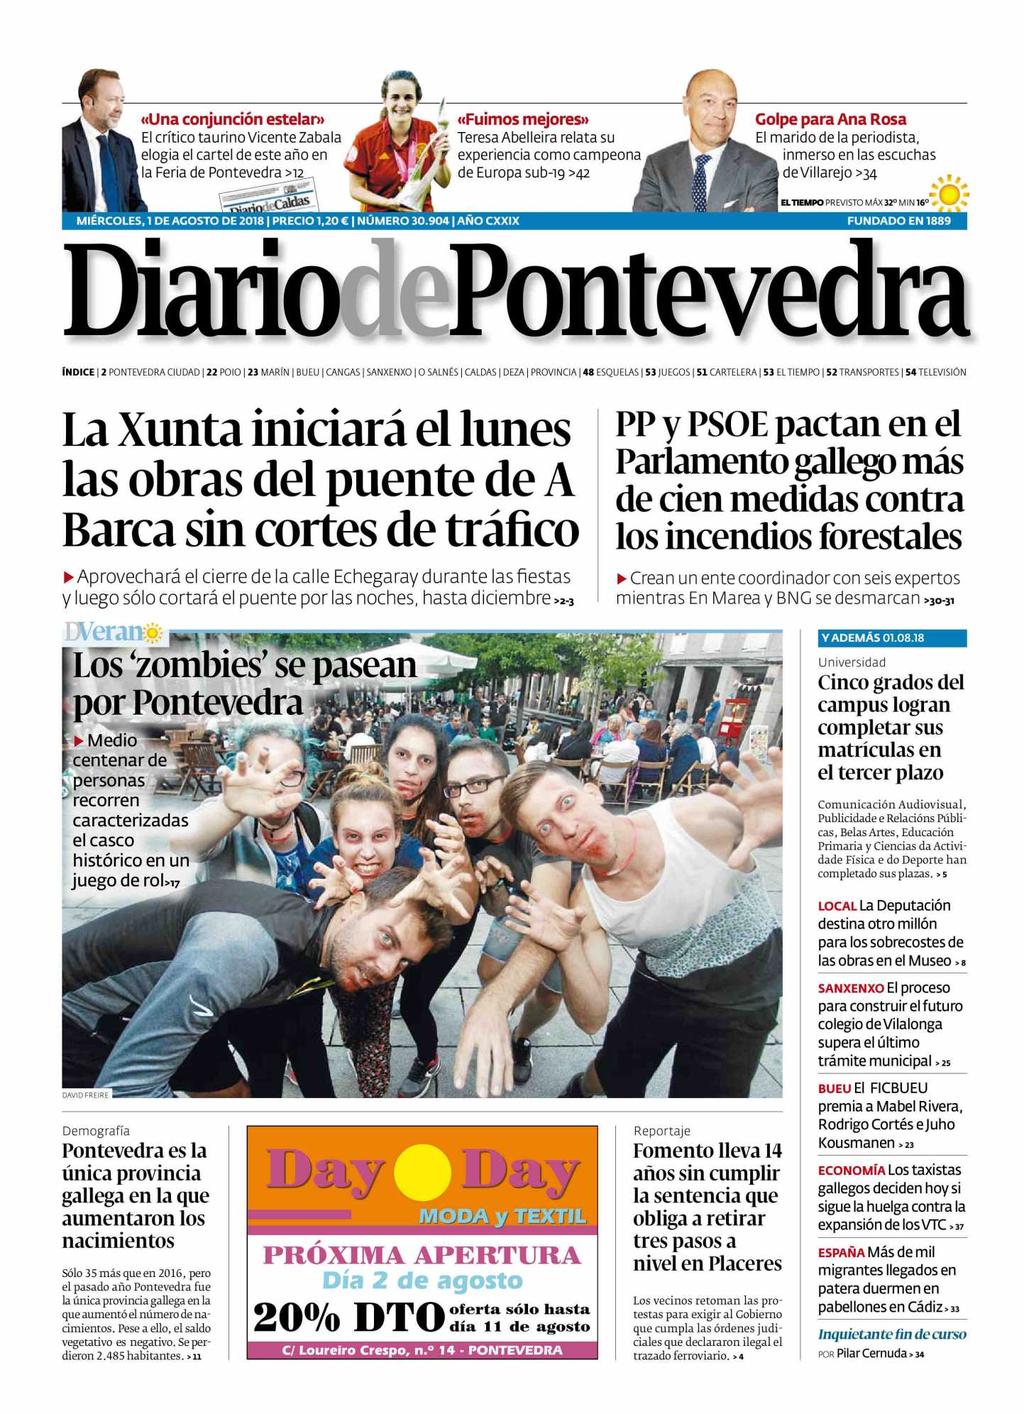 Diario de Pontevedra Pontevedra 5.376 Ejemplares 4.615 Ejemplares Sección: PORTADA Valor: 2.